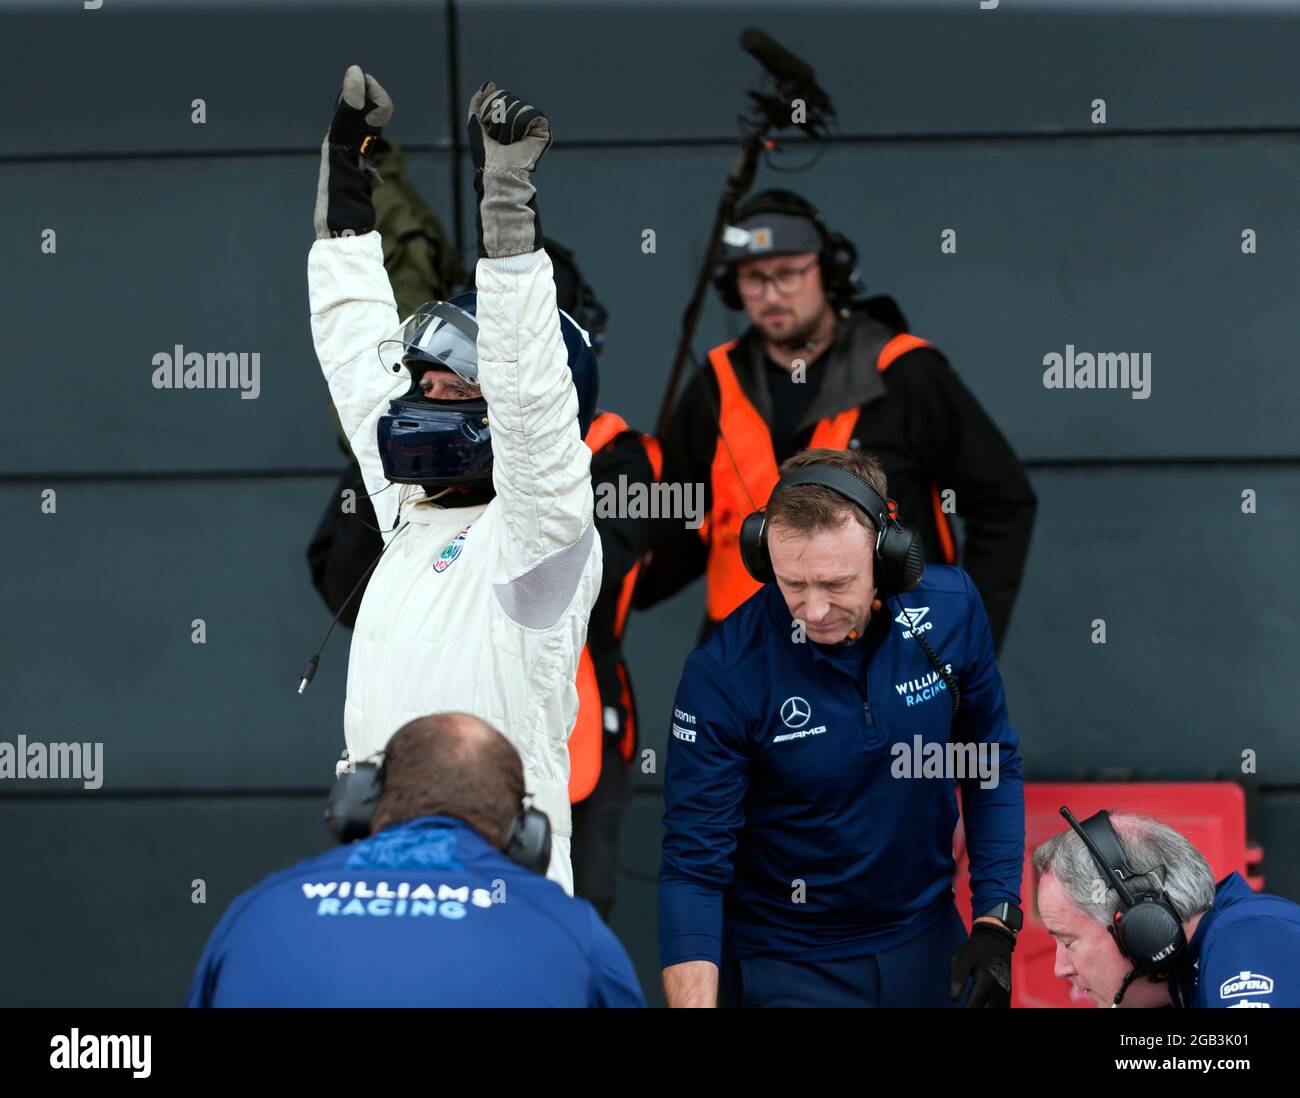 Damon Hill festeggia dopo aver eseguito diversi giri dimostrativi ad alta velocità nel suo Campionato del mondo vincendo Williams FW18 Formula One Car, al Silverstone Classic 2021 Foto Stock